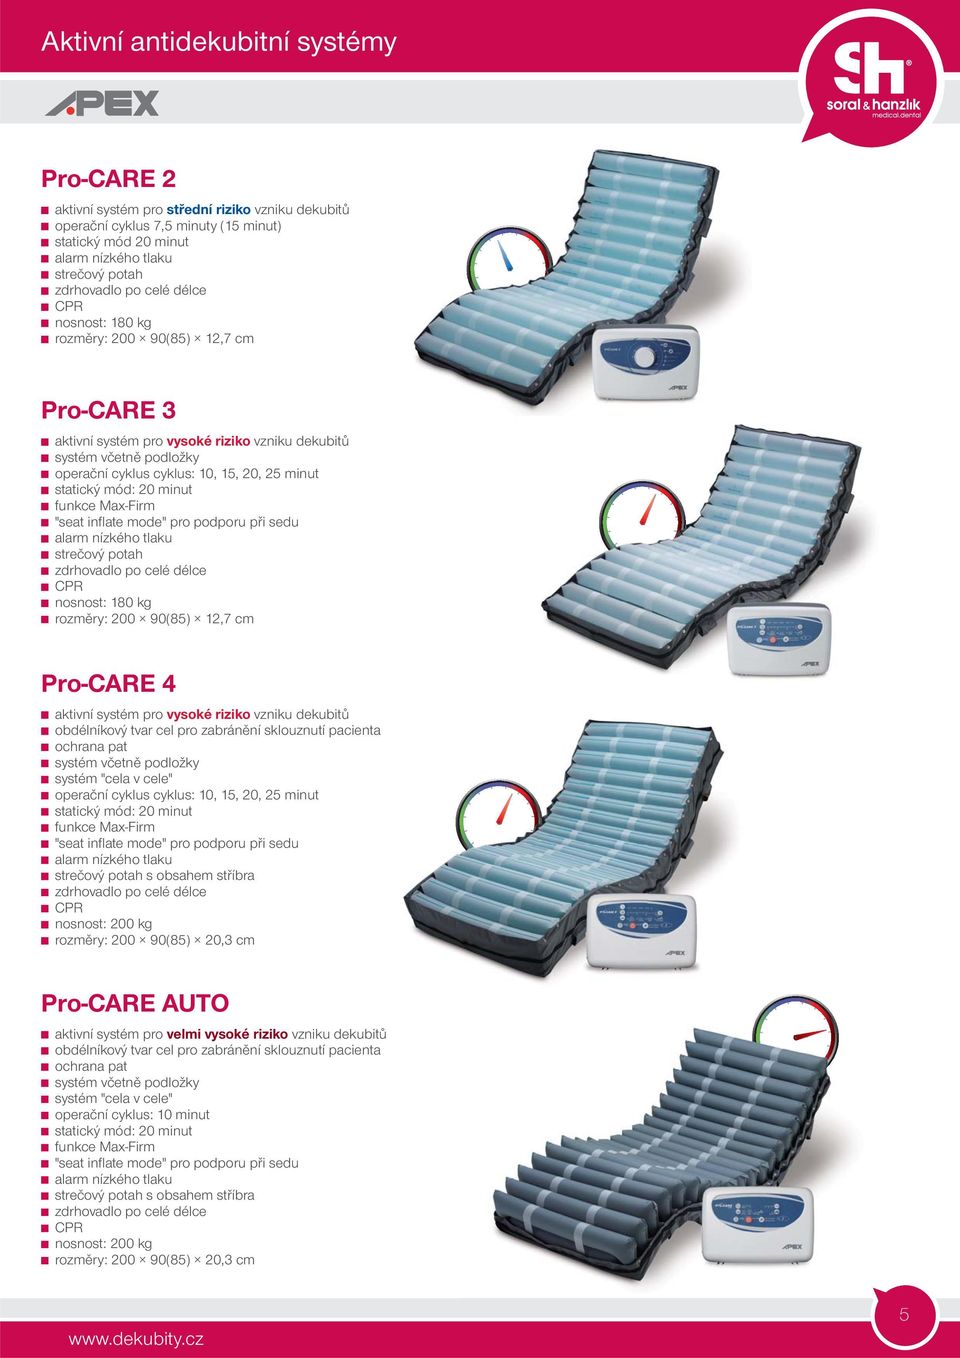 mód: 20 minut funkce Max-Firm "seat infl ate mode" pro podporu při sedu alarm nízkého tlaku strečový potah zdrhovadlo po celé délce CPR nosnost: 180 kg rozměry: 200 90(85) 12,7 cm Pro-CARE 4 aktivní